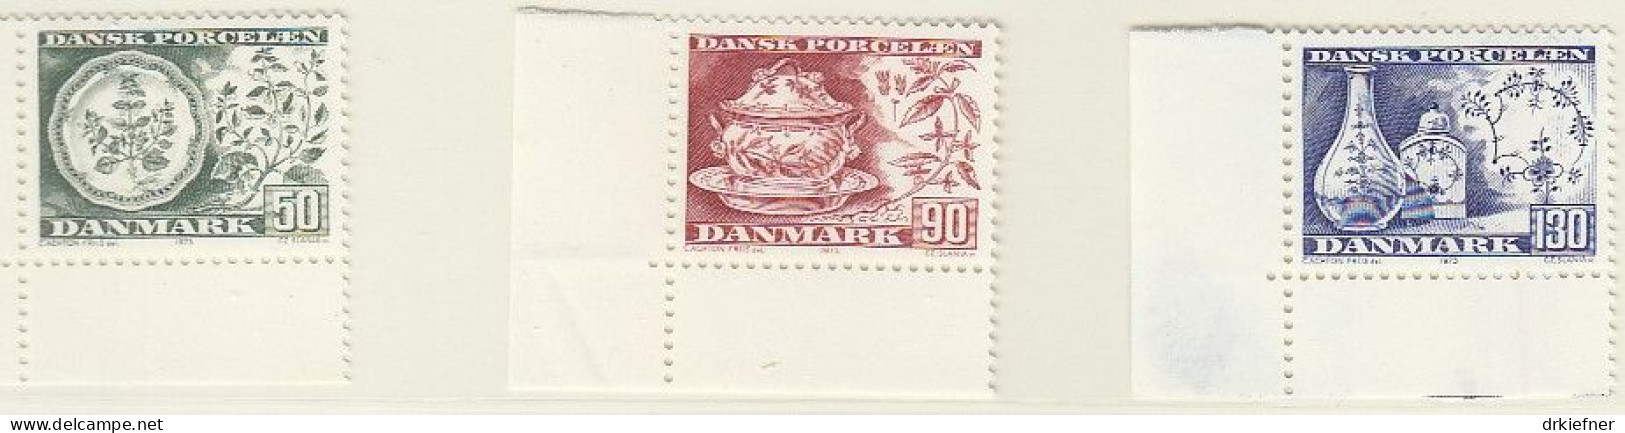 DÄNEMARK  589-591, Postfrisch **, Dänisches Porzellan, 1975 - Ungebraucht